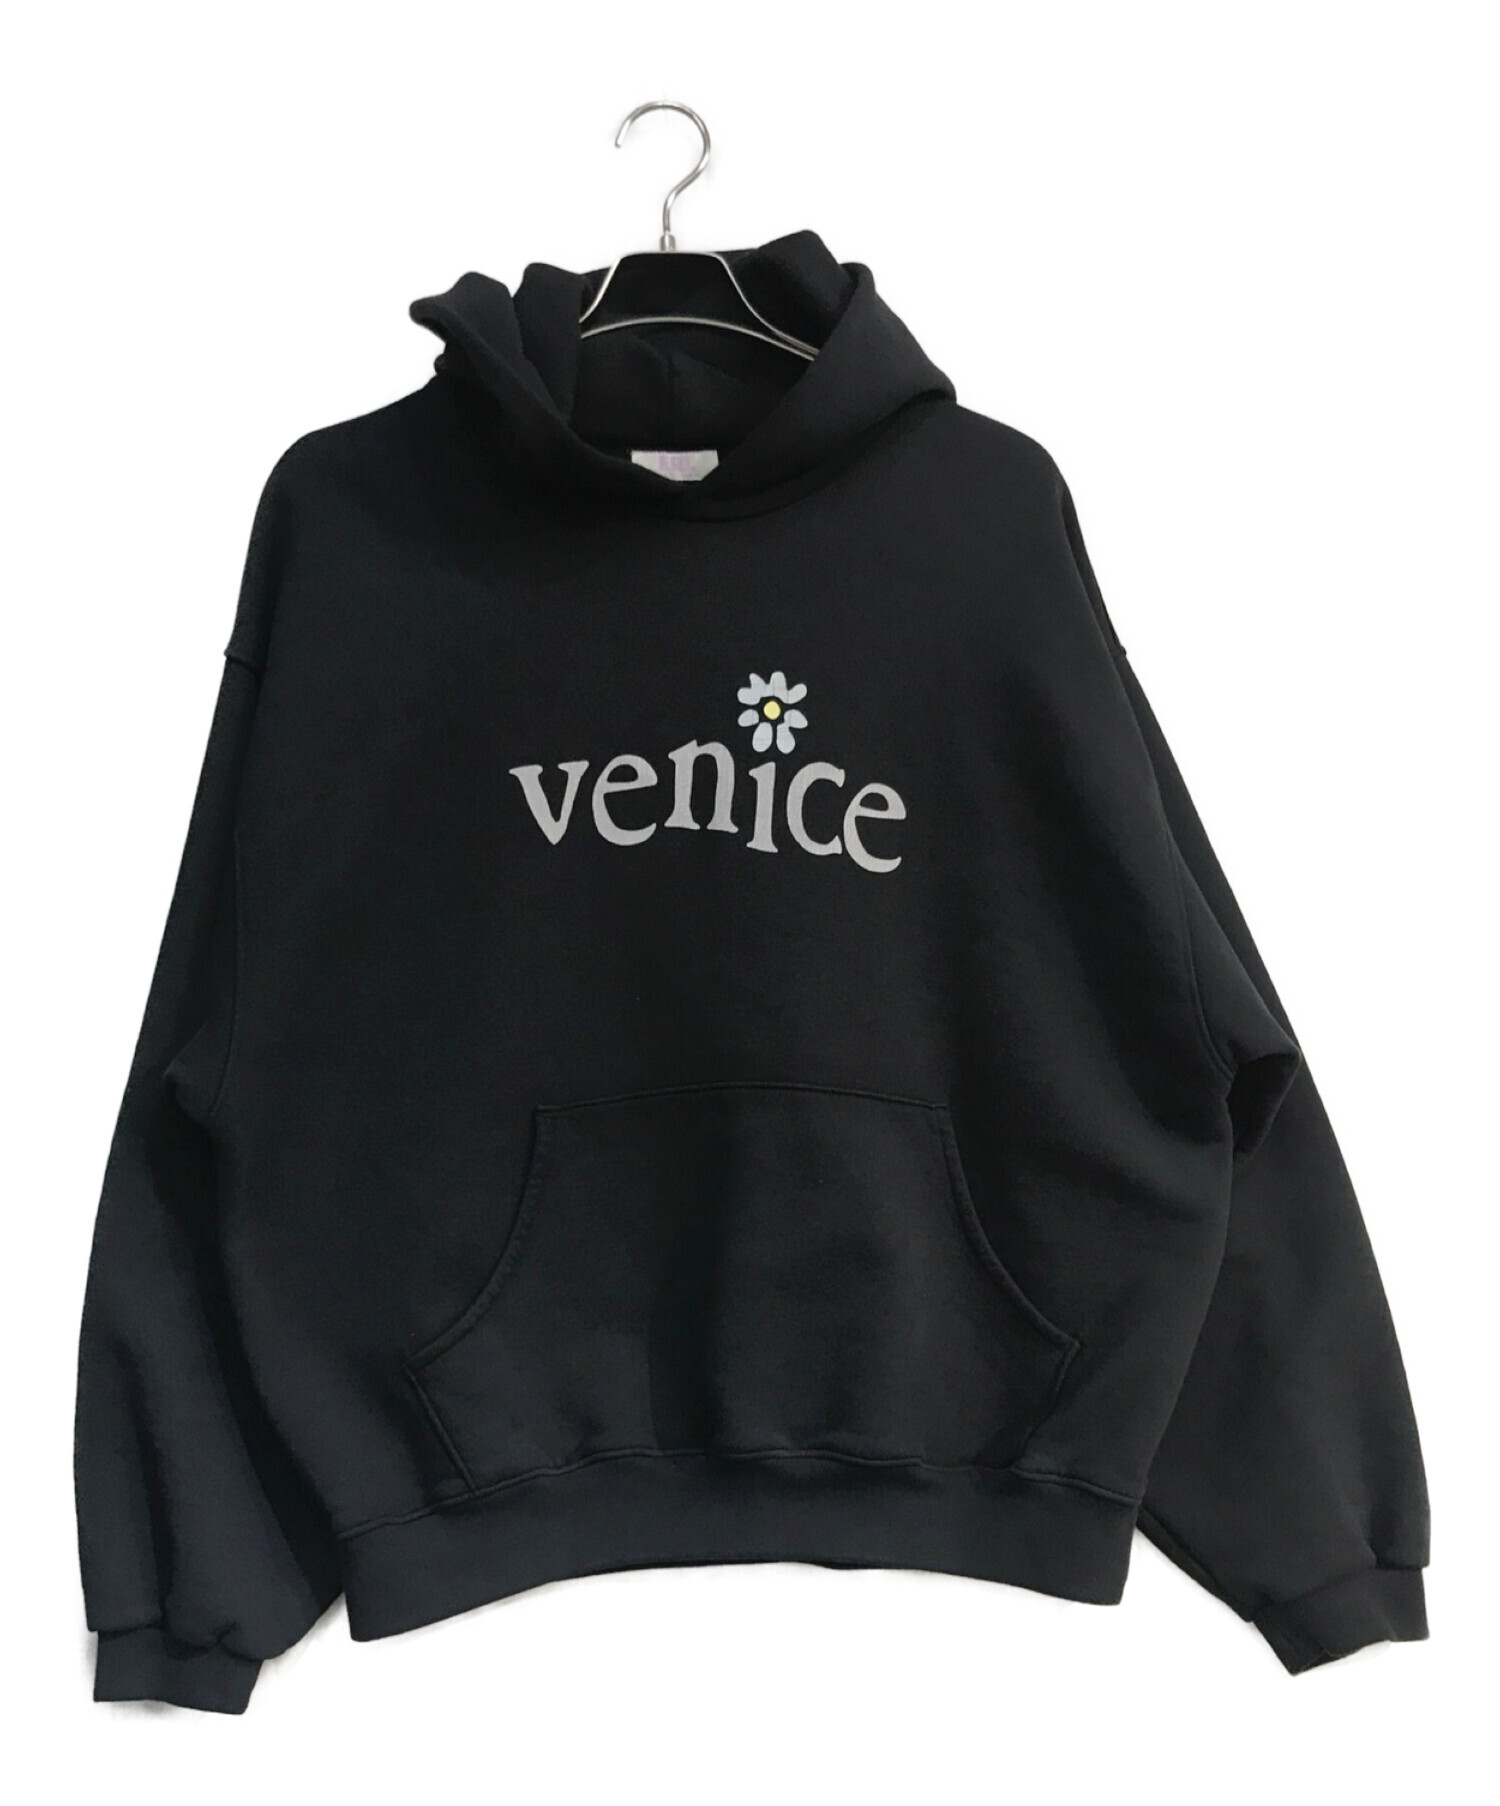 中古・古着通販】ERL (イーアールエル) venice hoodie ブラック サイズ 